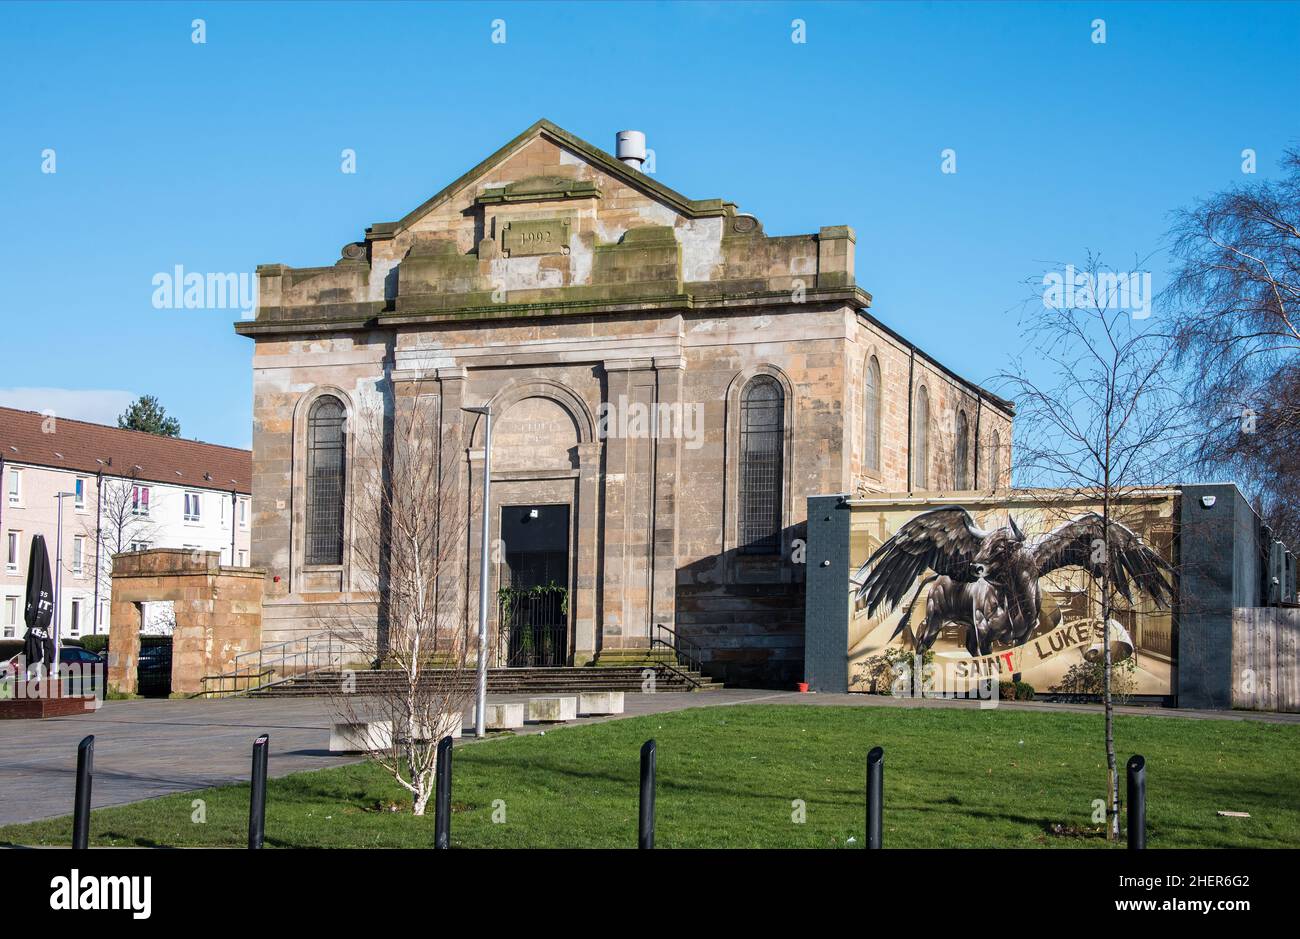 Saint Luke's & The Winged Ox Freizeit- und Veranstaltungsort in der Nähe von Barrowlands Glasgow, Schottland Stockfoto